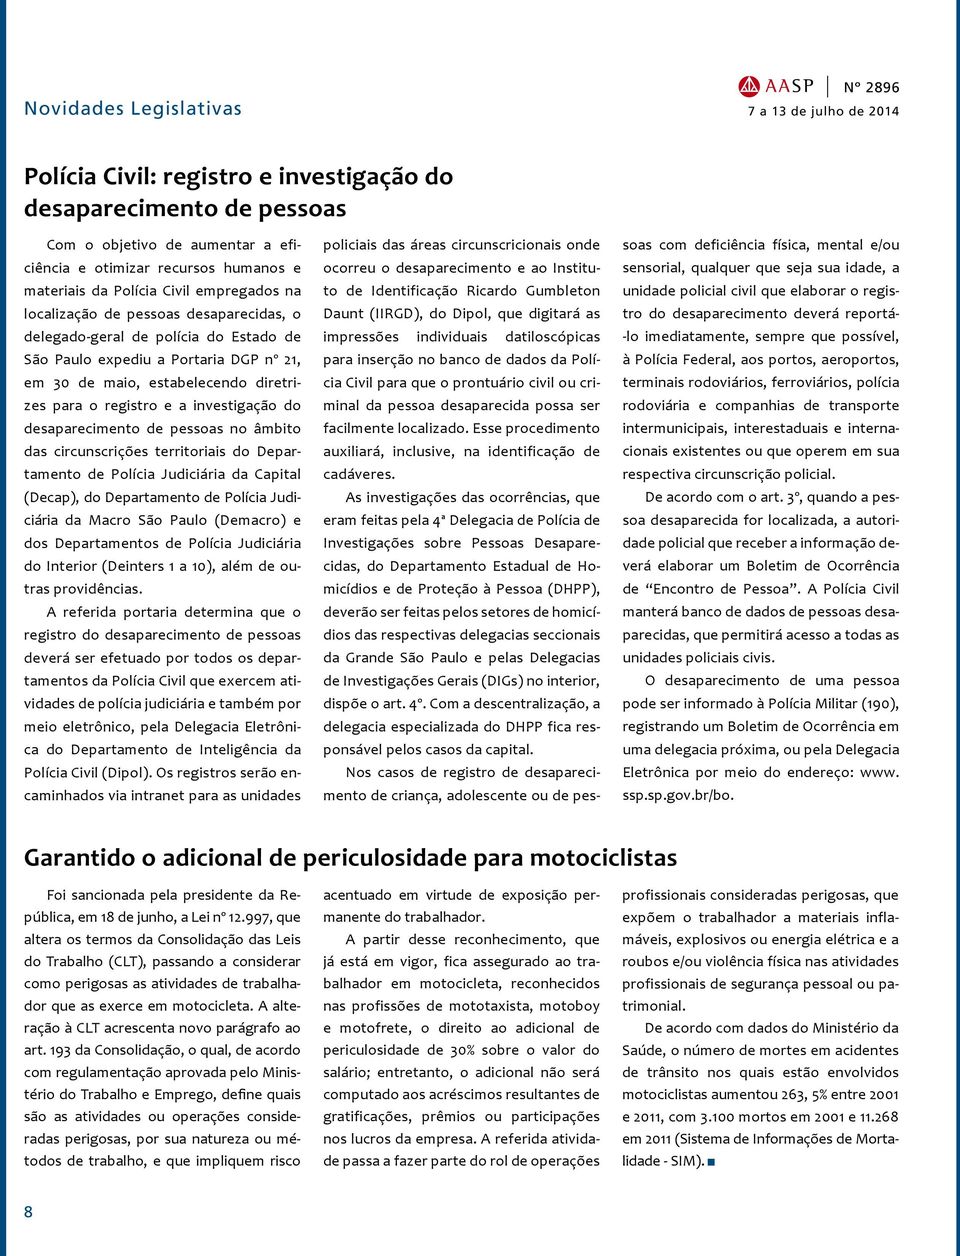 desaparecimento de pessoas no âmbito das circunscrições territoriais do Departamento de Polícia Judiciária da Capital (Decap), do Departamento de Polícia Judiciária da Macro São Paulo (Demacro) e dos